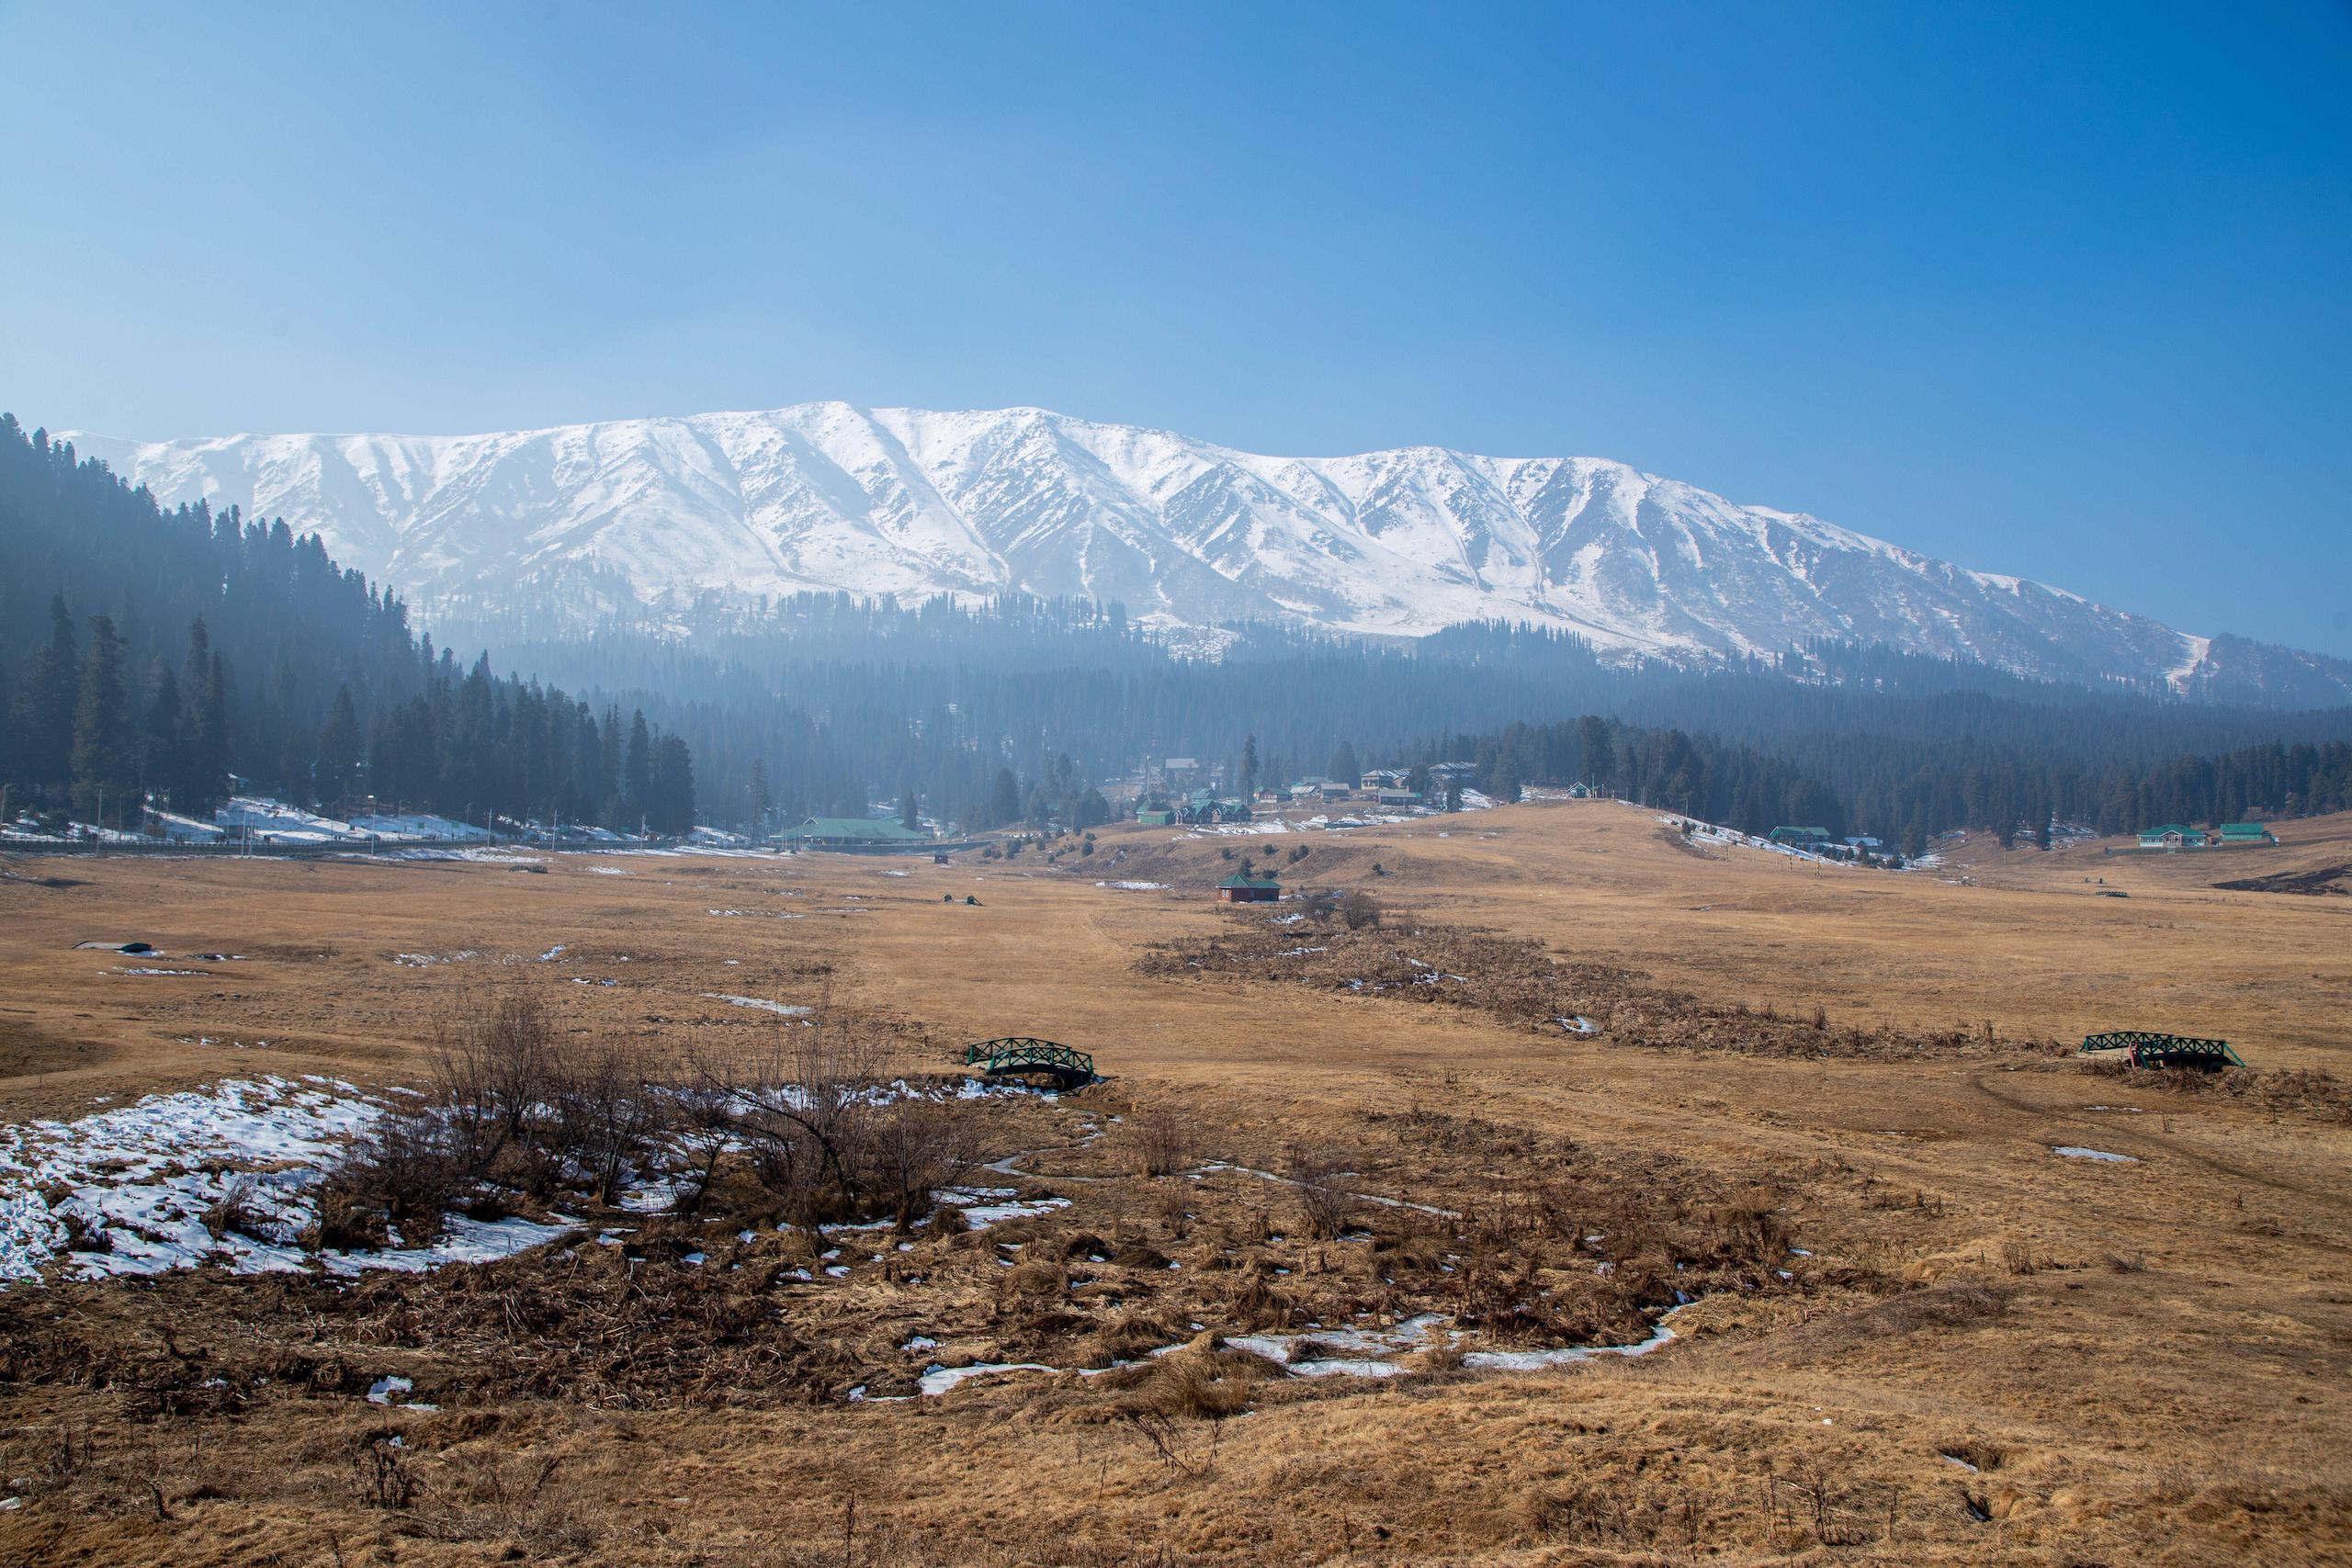 <p>अपने स्की रिसॉर्ट्स के लिए प्रसिद्ध, जम्मू और कश्मीर का गुलमर्ग बेहद सूखे दौर से गुजर रहा है। दरअसल, इस इलाके में और यहां की ढलानों से बर्फ गायब है। (फोटो: फ़ैसल बशीर / अलामी)</p>